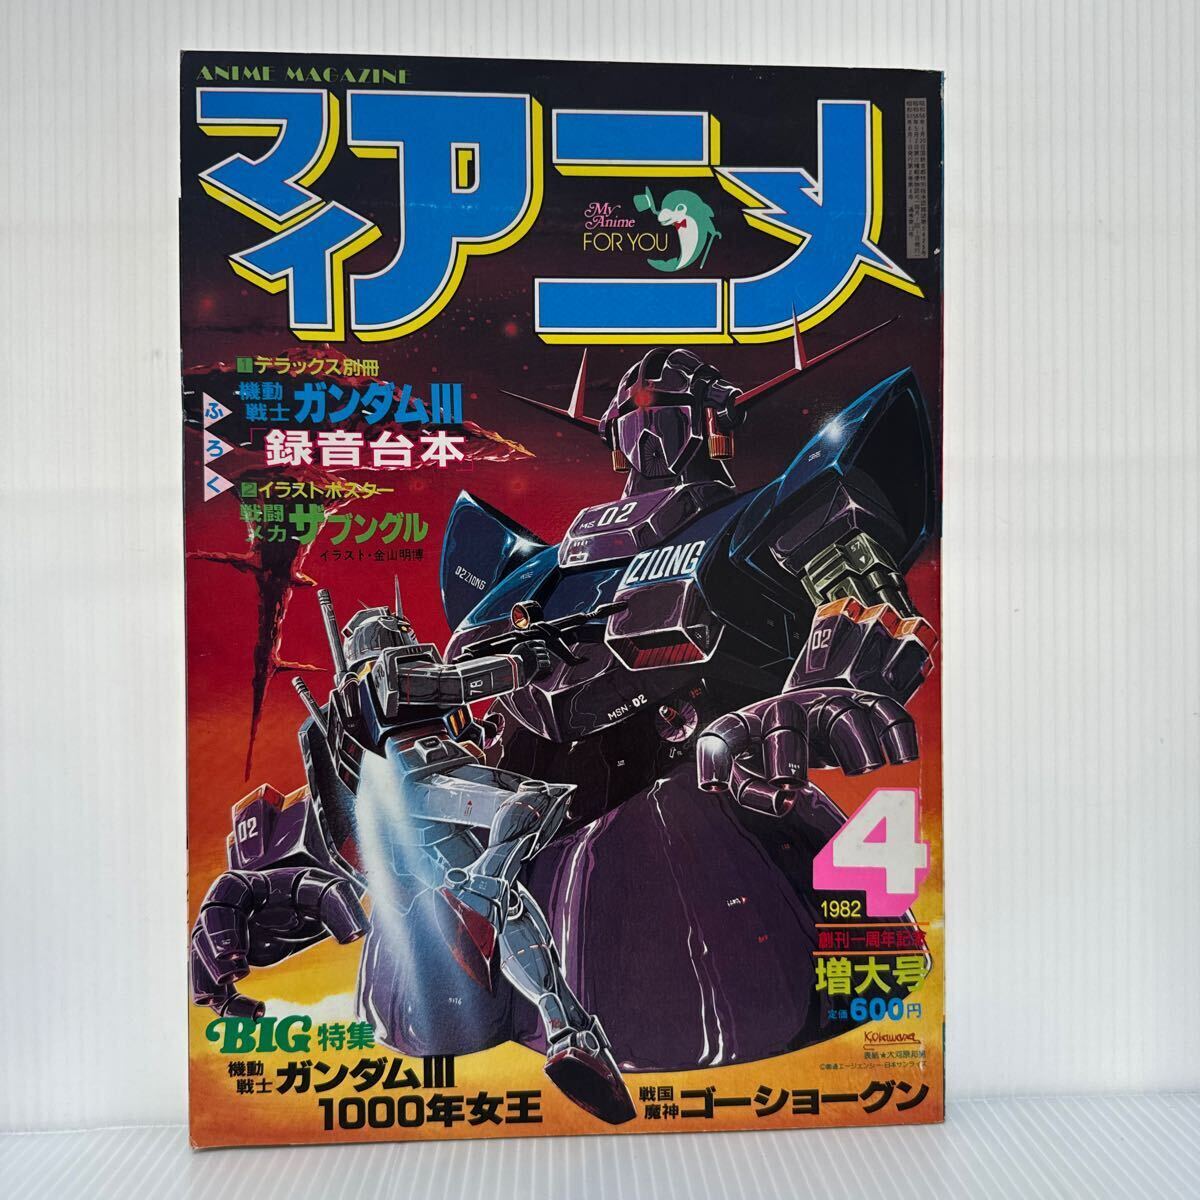  мой аниме 1982 год 4 месяц номер постер дополнение есть * Mobile Suit Gundam Ⅲ/ запись сценарий / Blue Gale Xabungle / Sengoku Majin GouShougun 